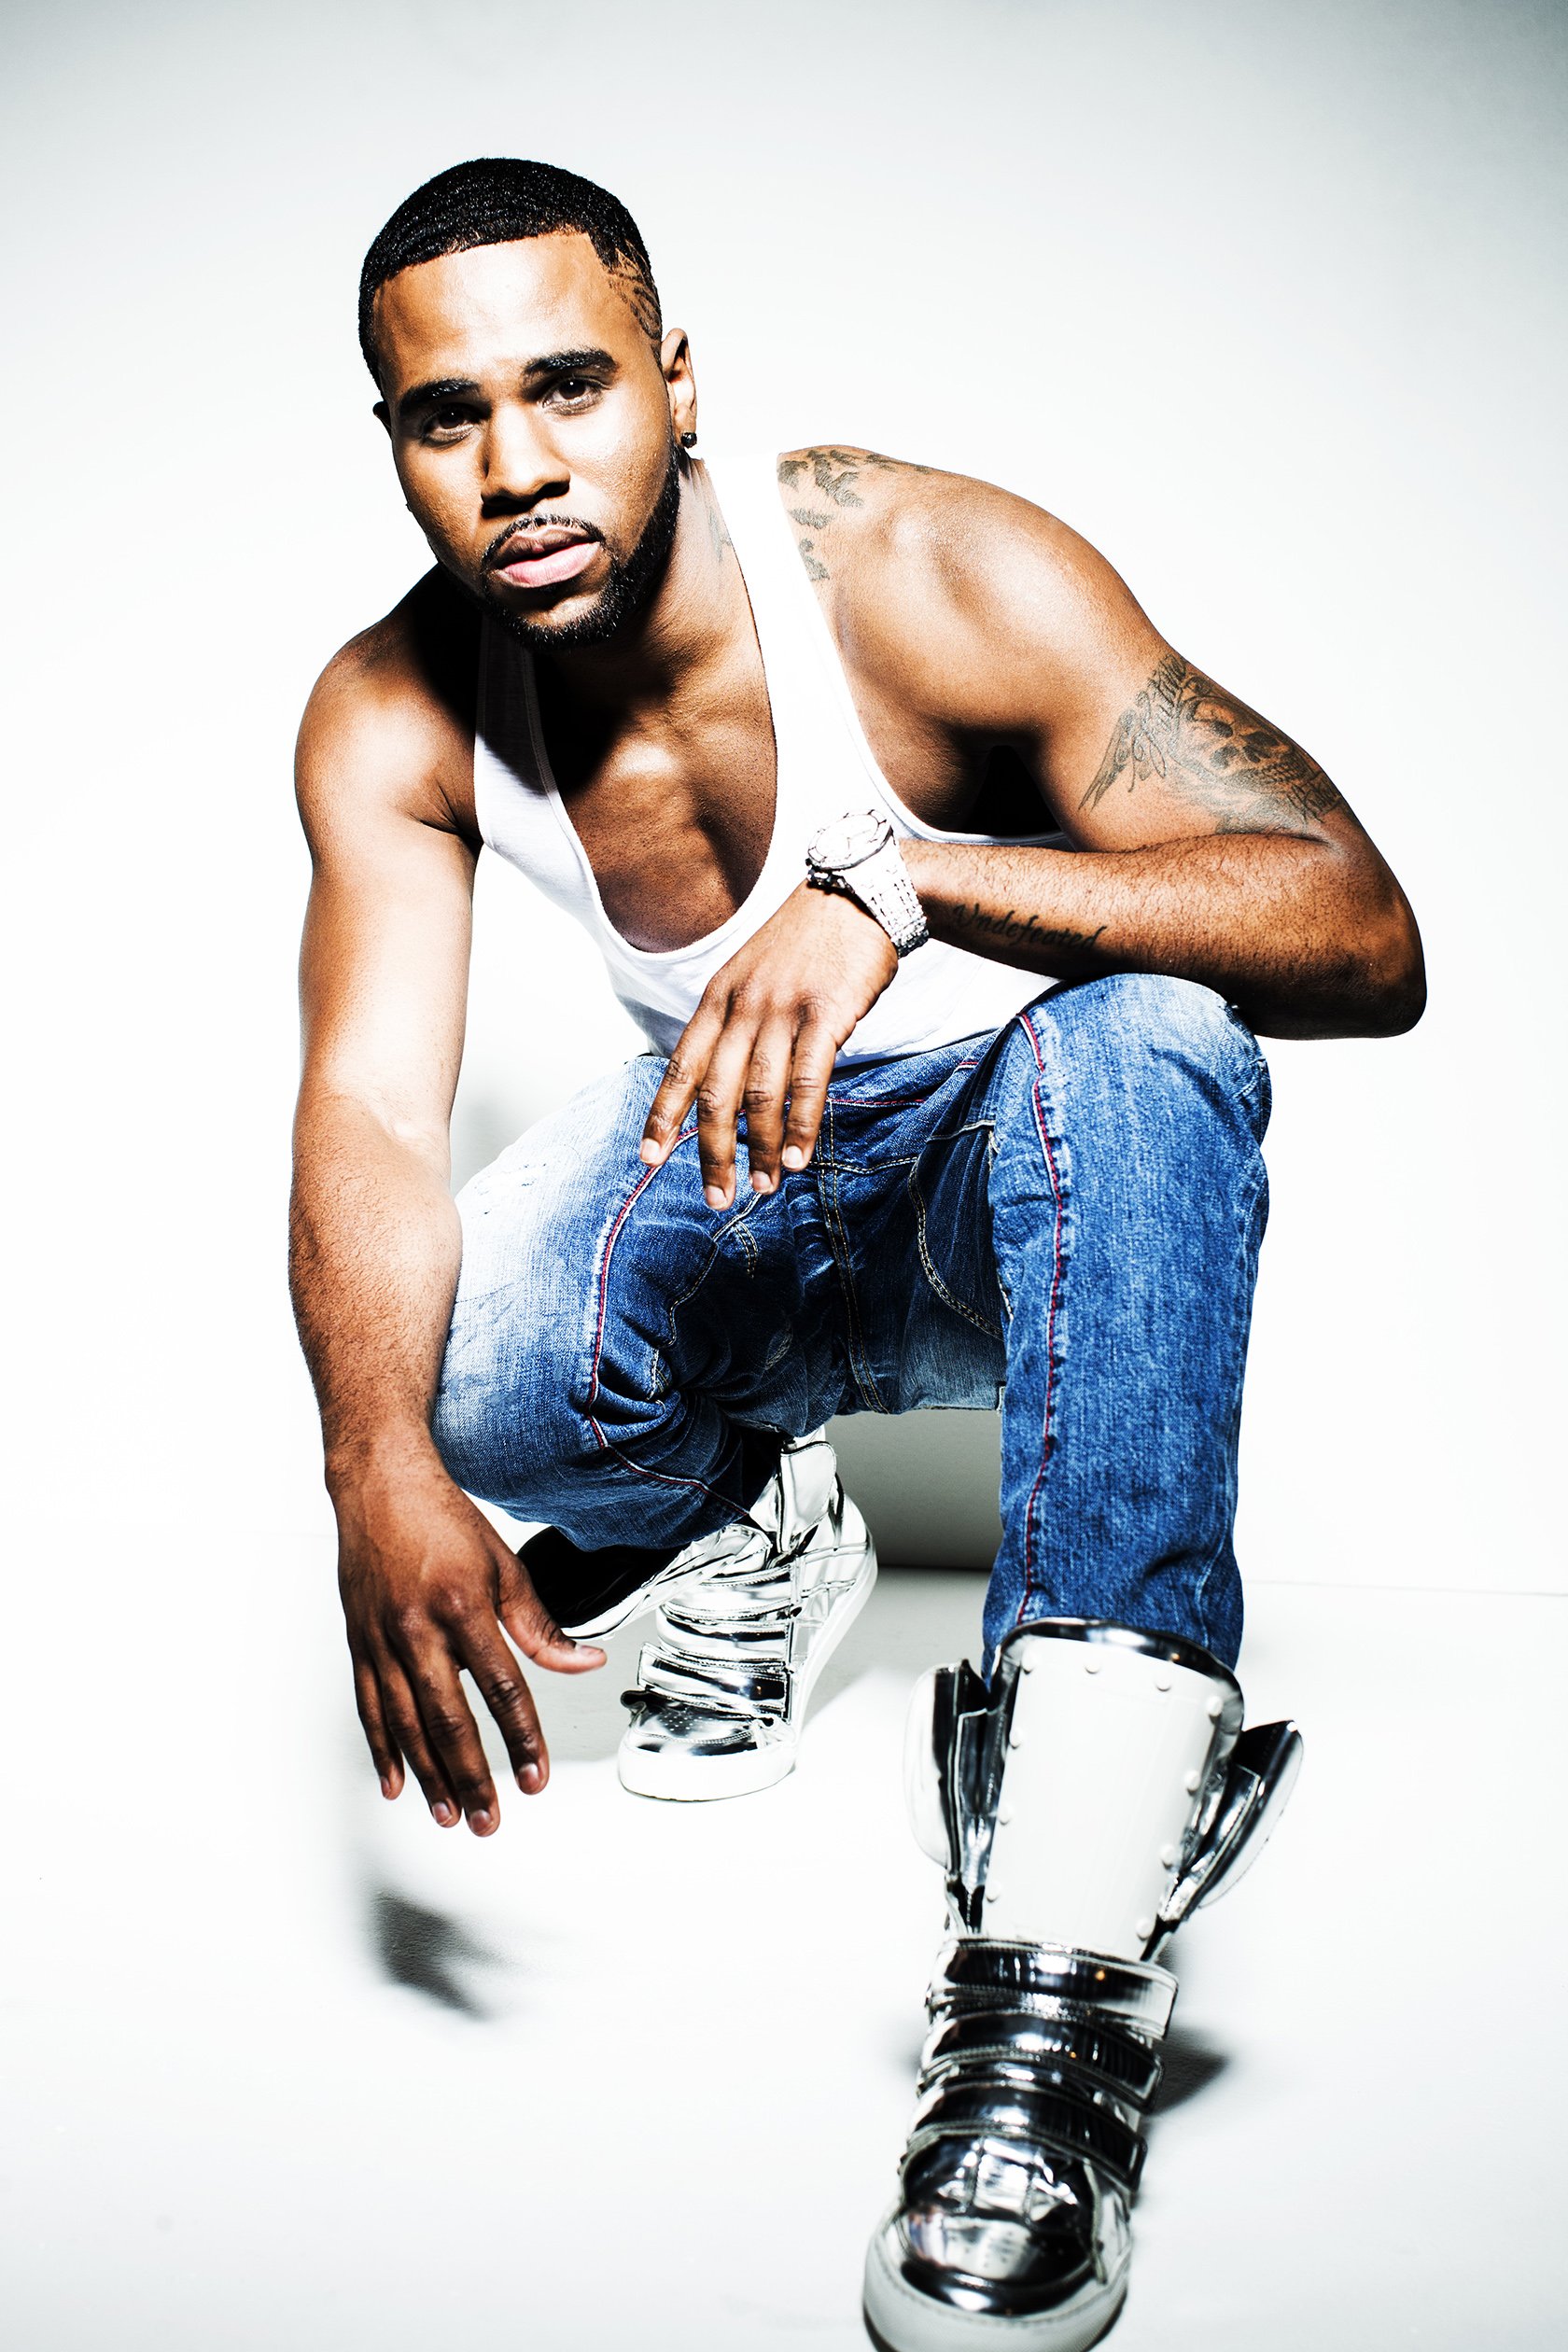 Jason Derulo Singer Dancer Dance R B Pop Hip Hop 1derulo Wallpaper